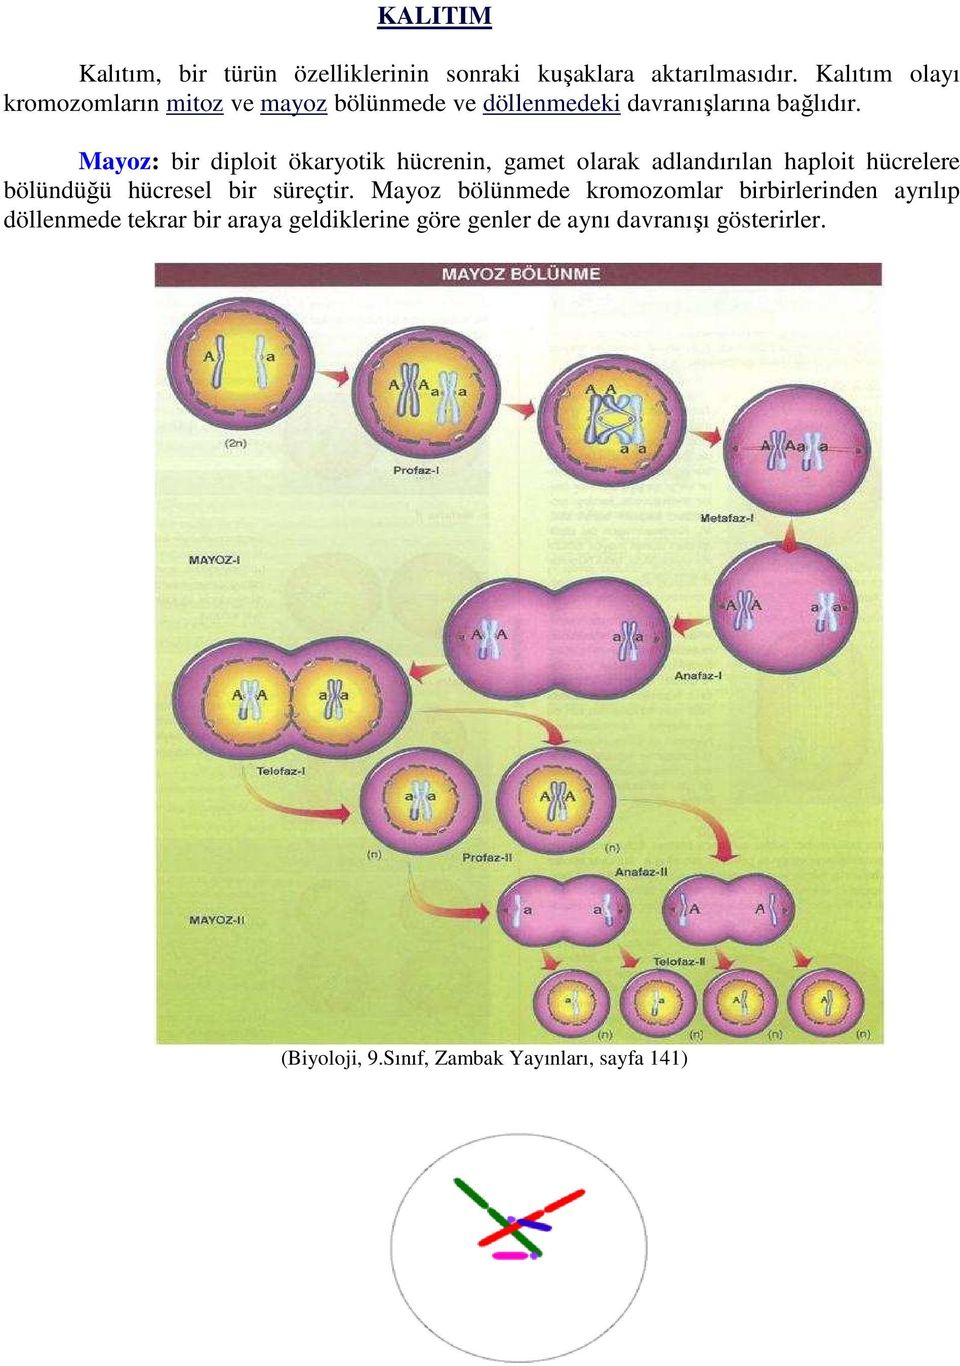 Mayoz: bir diploit ökaryotik hücrenin, gamet olarak adlandırılan haploit hücrelere bölündüğü hücresel bir süreçtir.